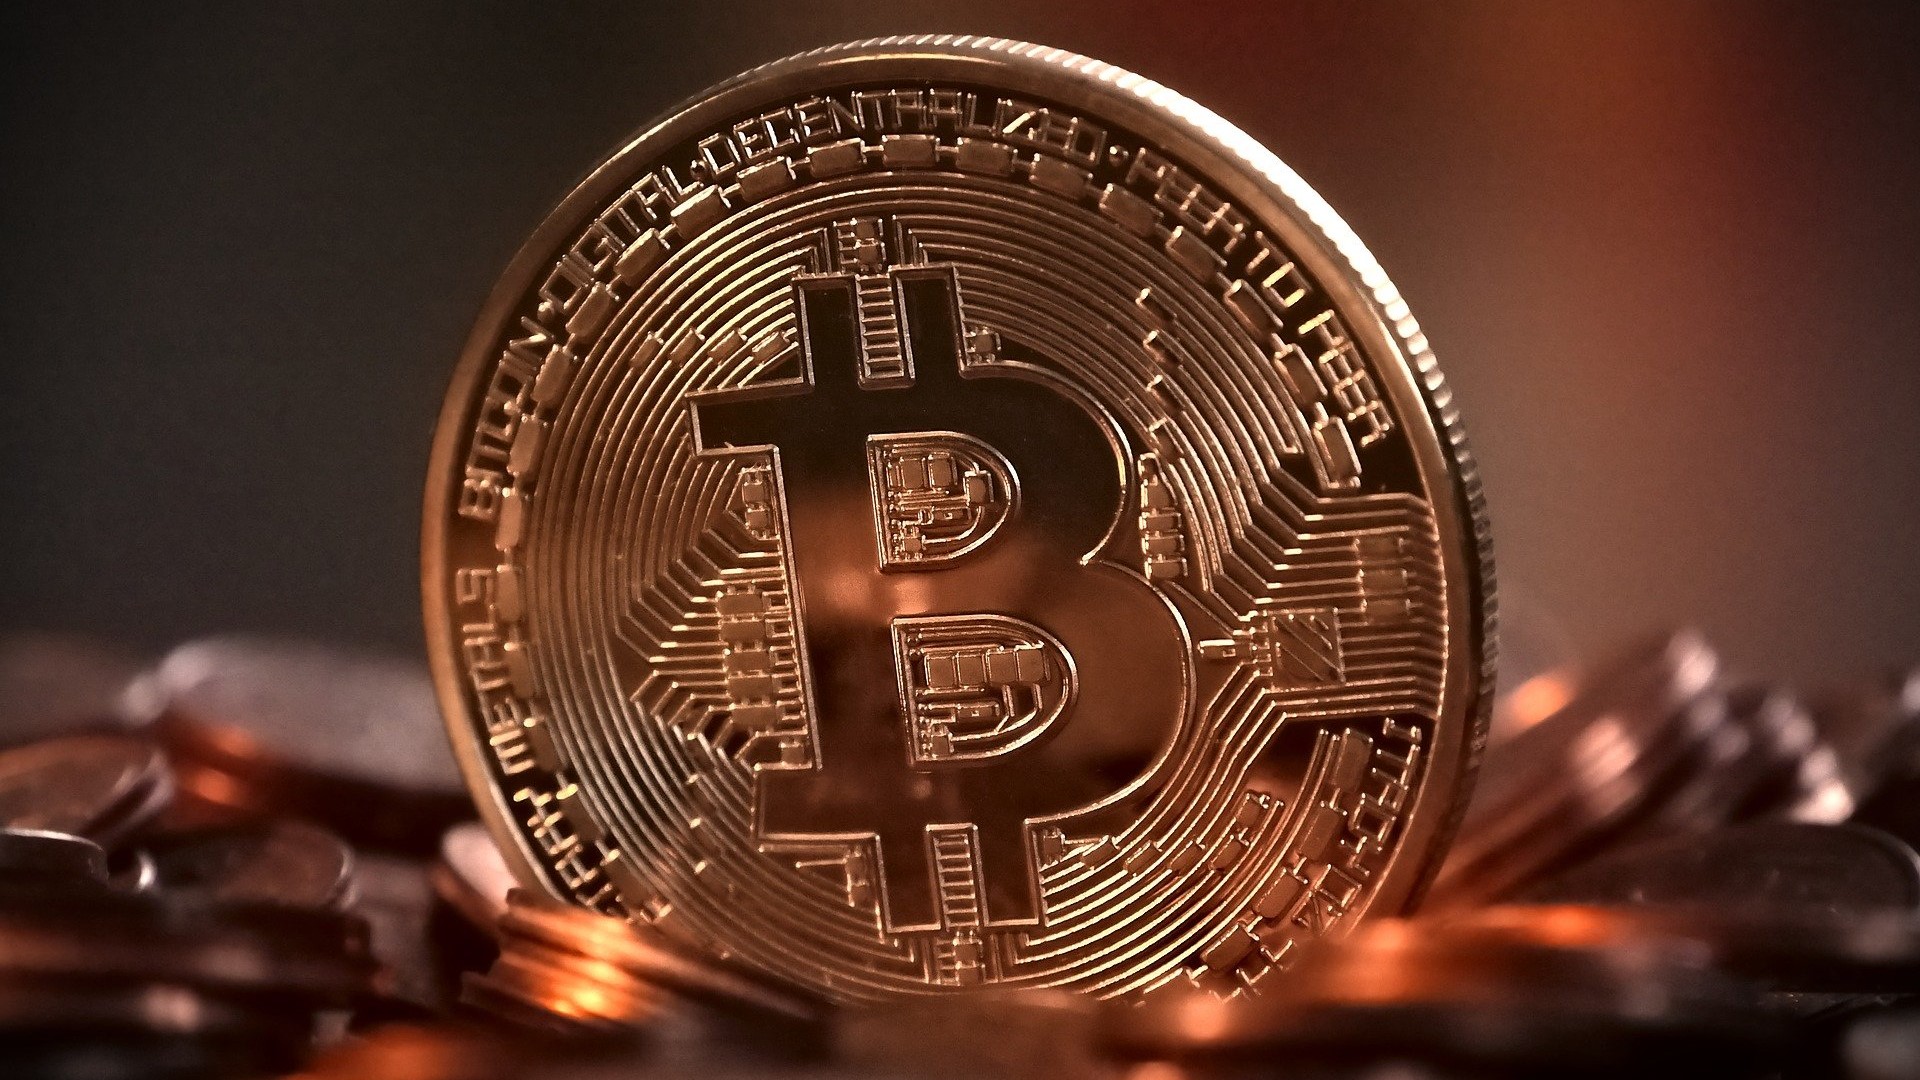 Bitcoin ร่วงลงมา 11% สู่ระดับราคา 1.66 ล้านบาทหลังพุ่งสูงสุดได้แค่ 4 วัน